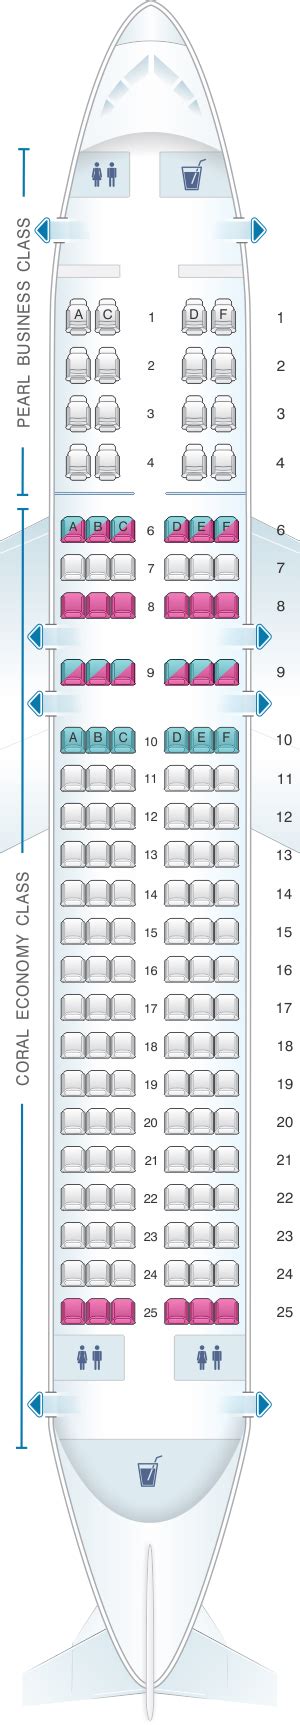 Seat Map Etihad Airways Airbus A320 200 Seatmaestro